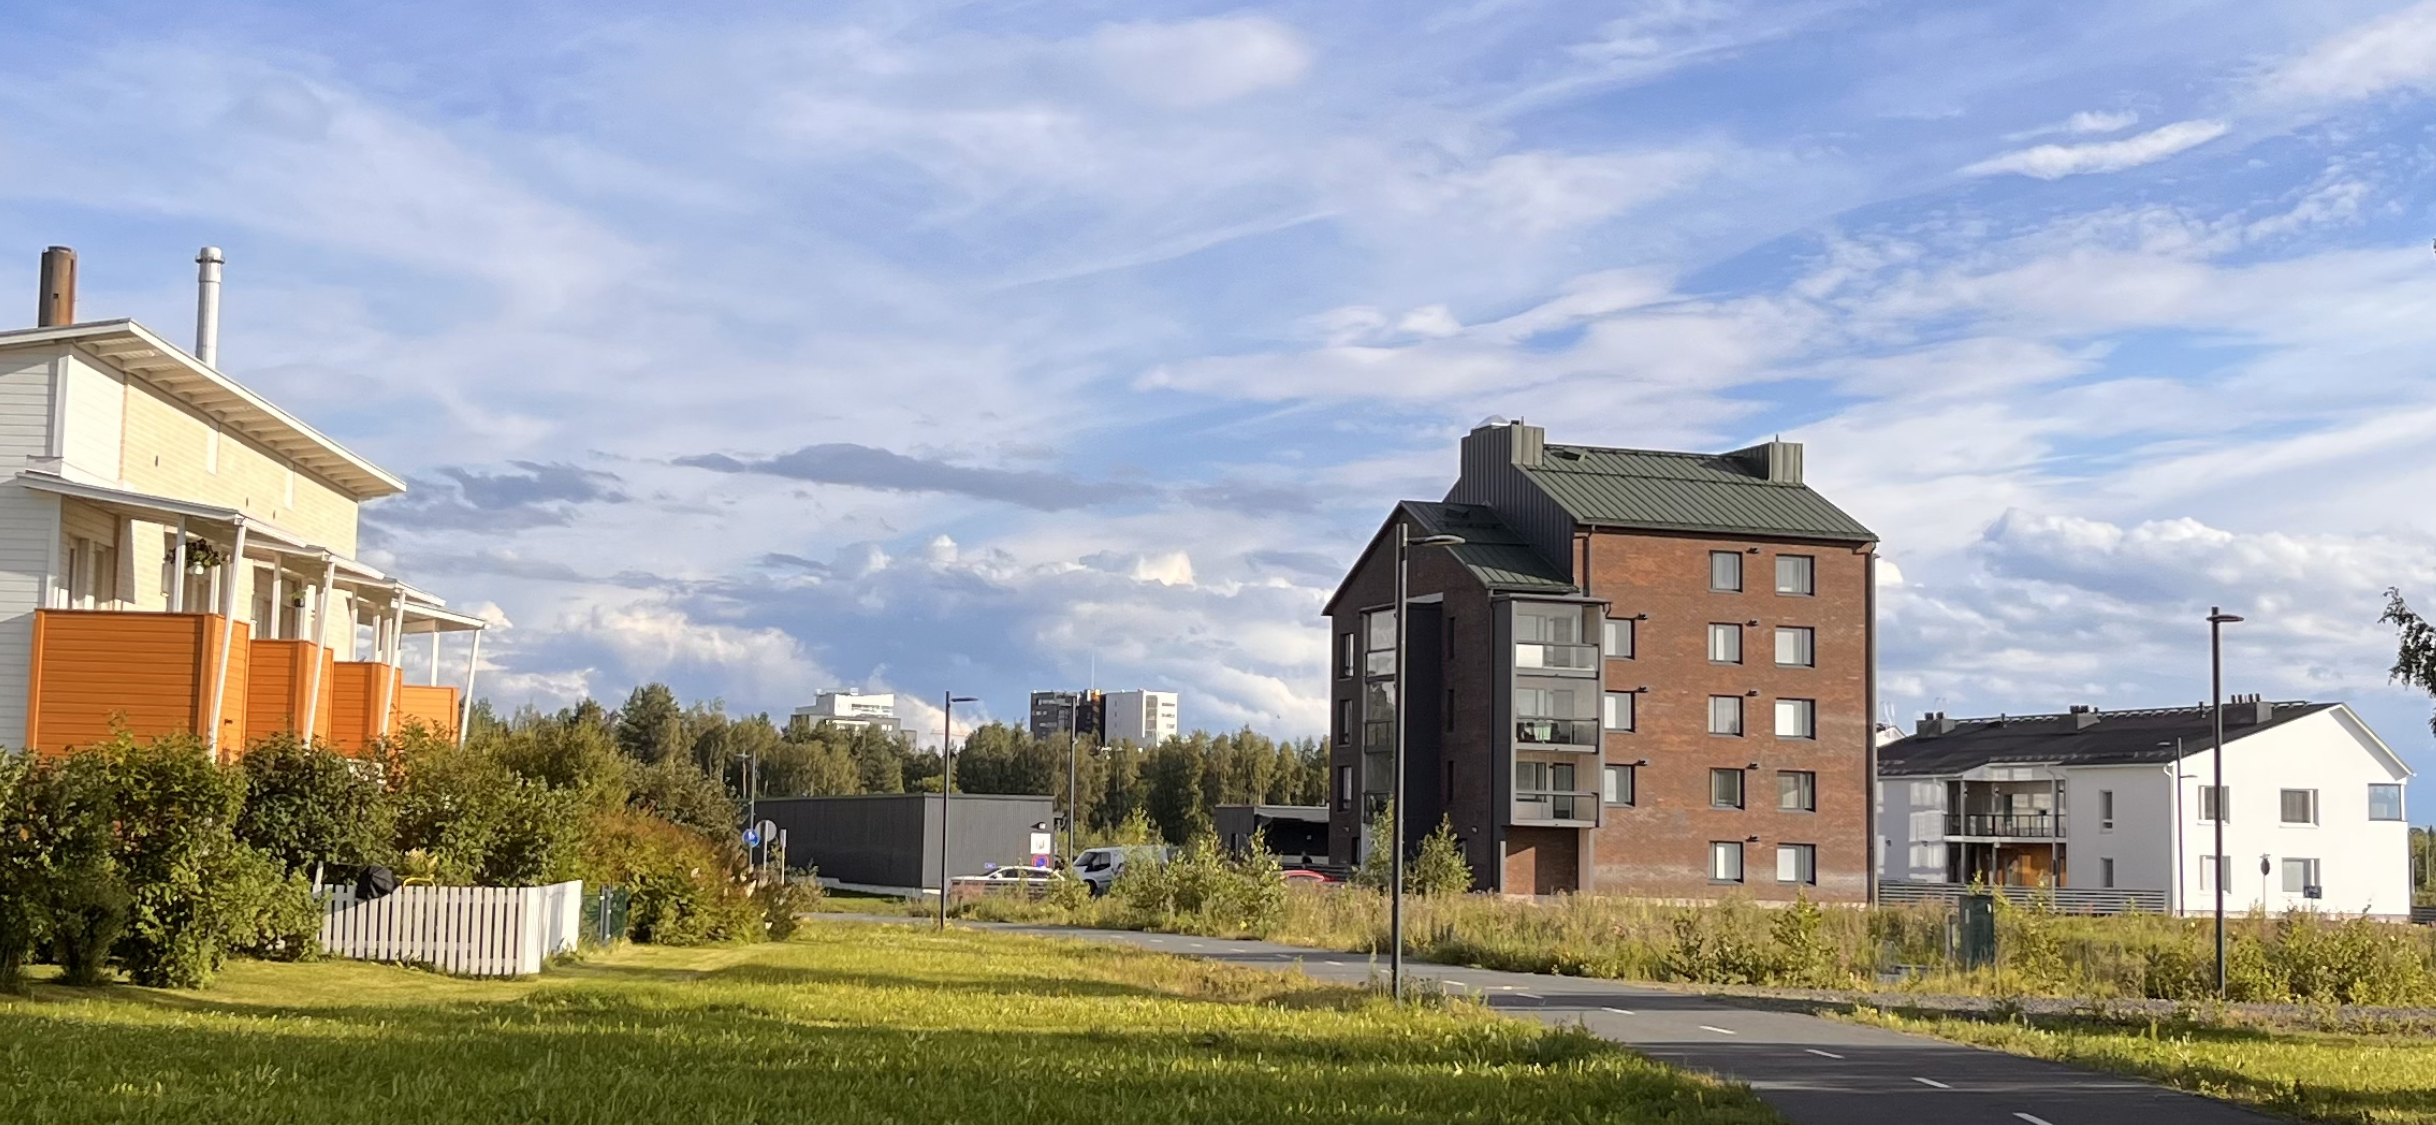 Taloyhtiöiden kustannukset nousseet laajasti - kiinteistökustannuksissa Kempele edelleen edullisin, suurista kaupungeista Oulu